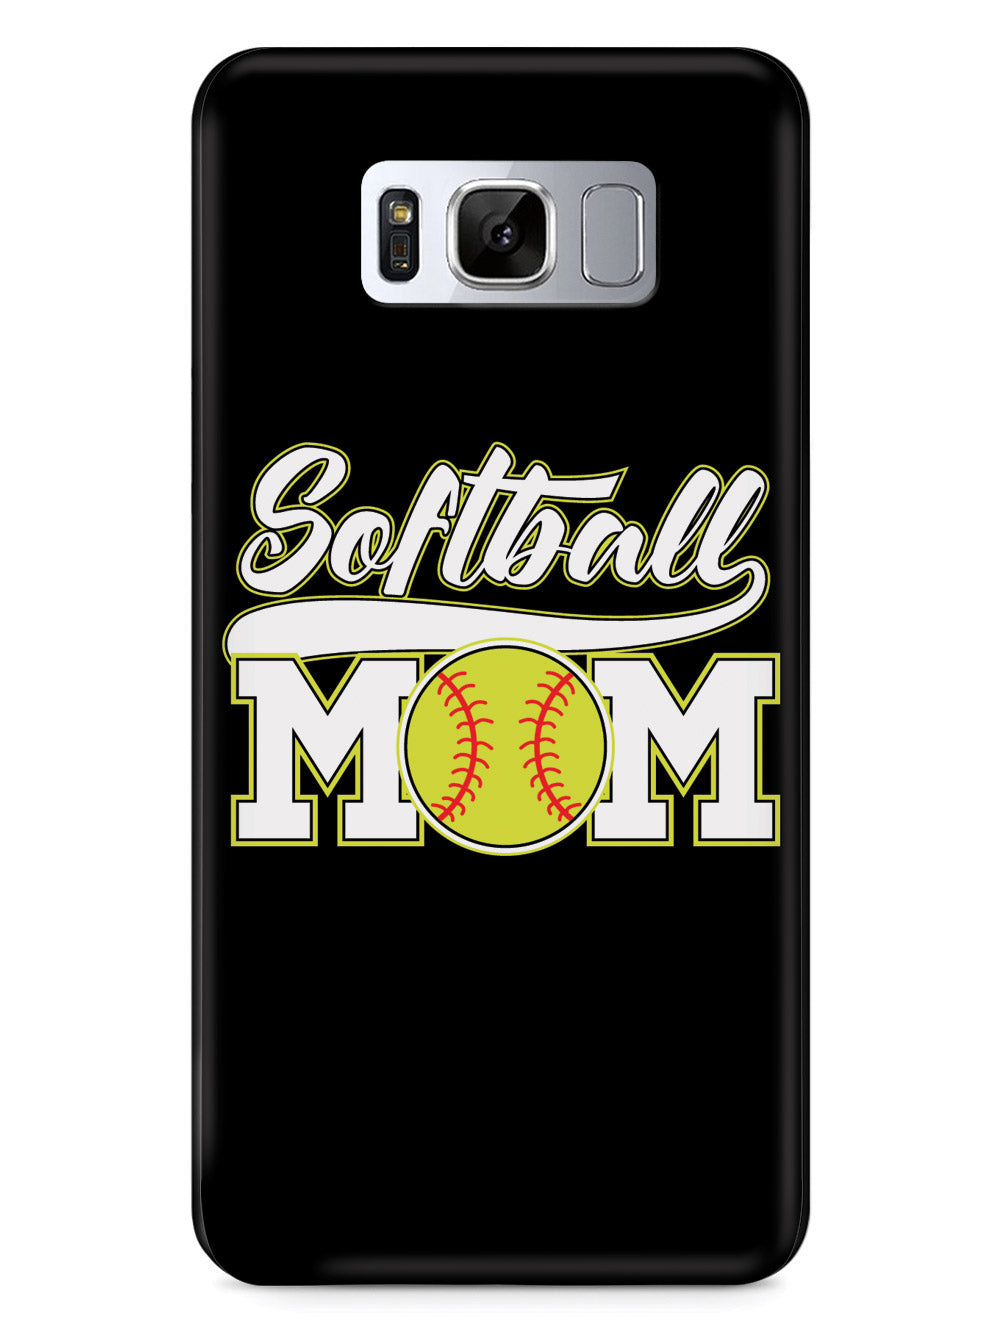 Softball Mom - Black Case